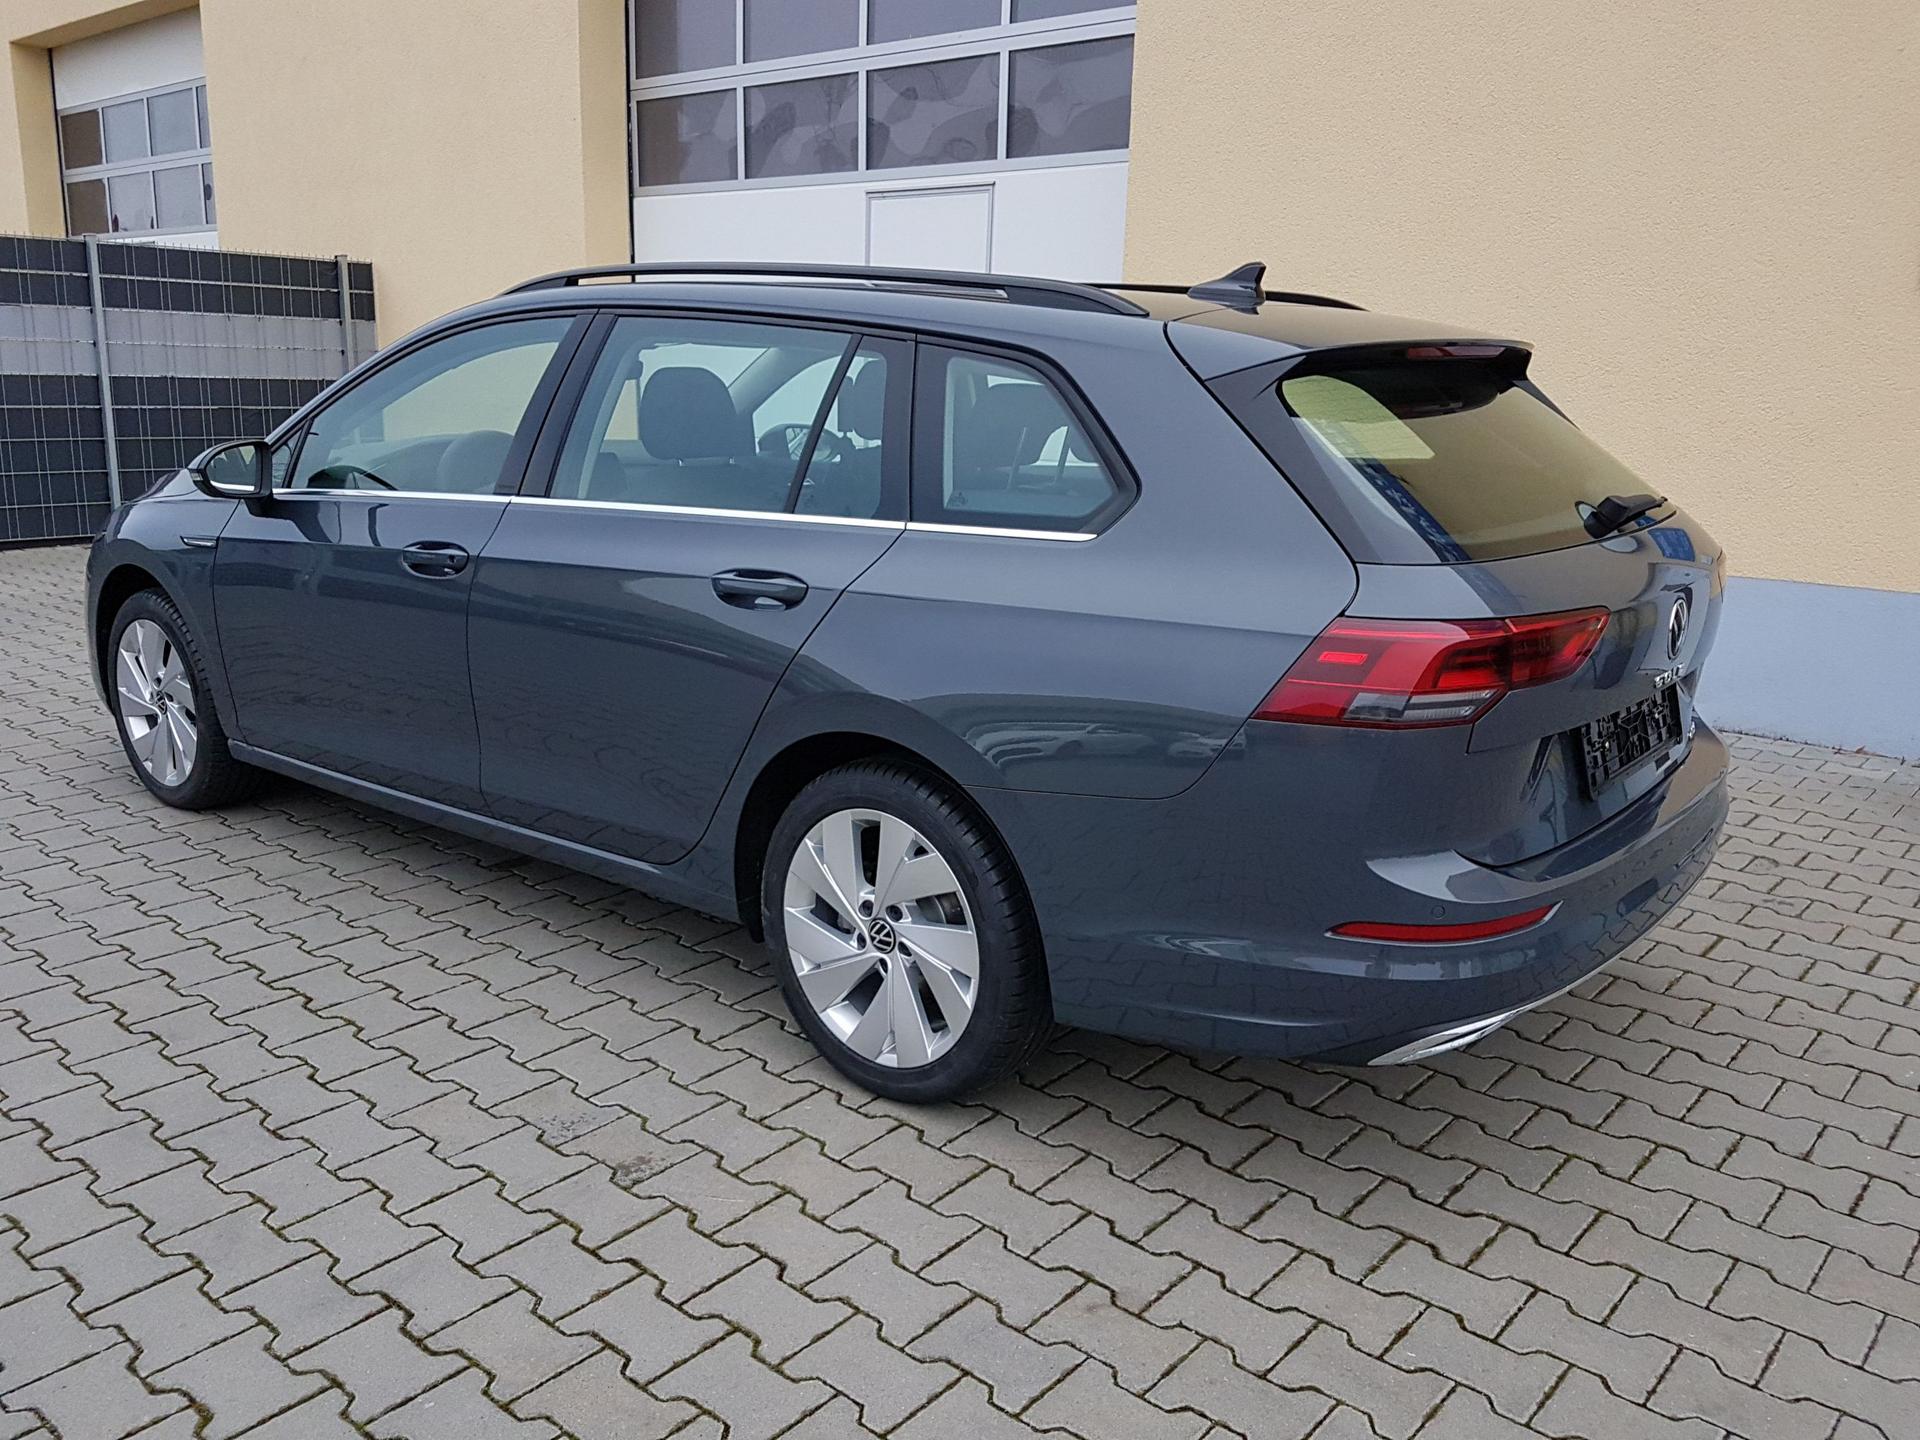 Heckklappe / Kofferraumdecke für VW Golf günstig bestellen